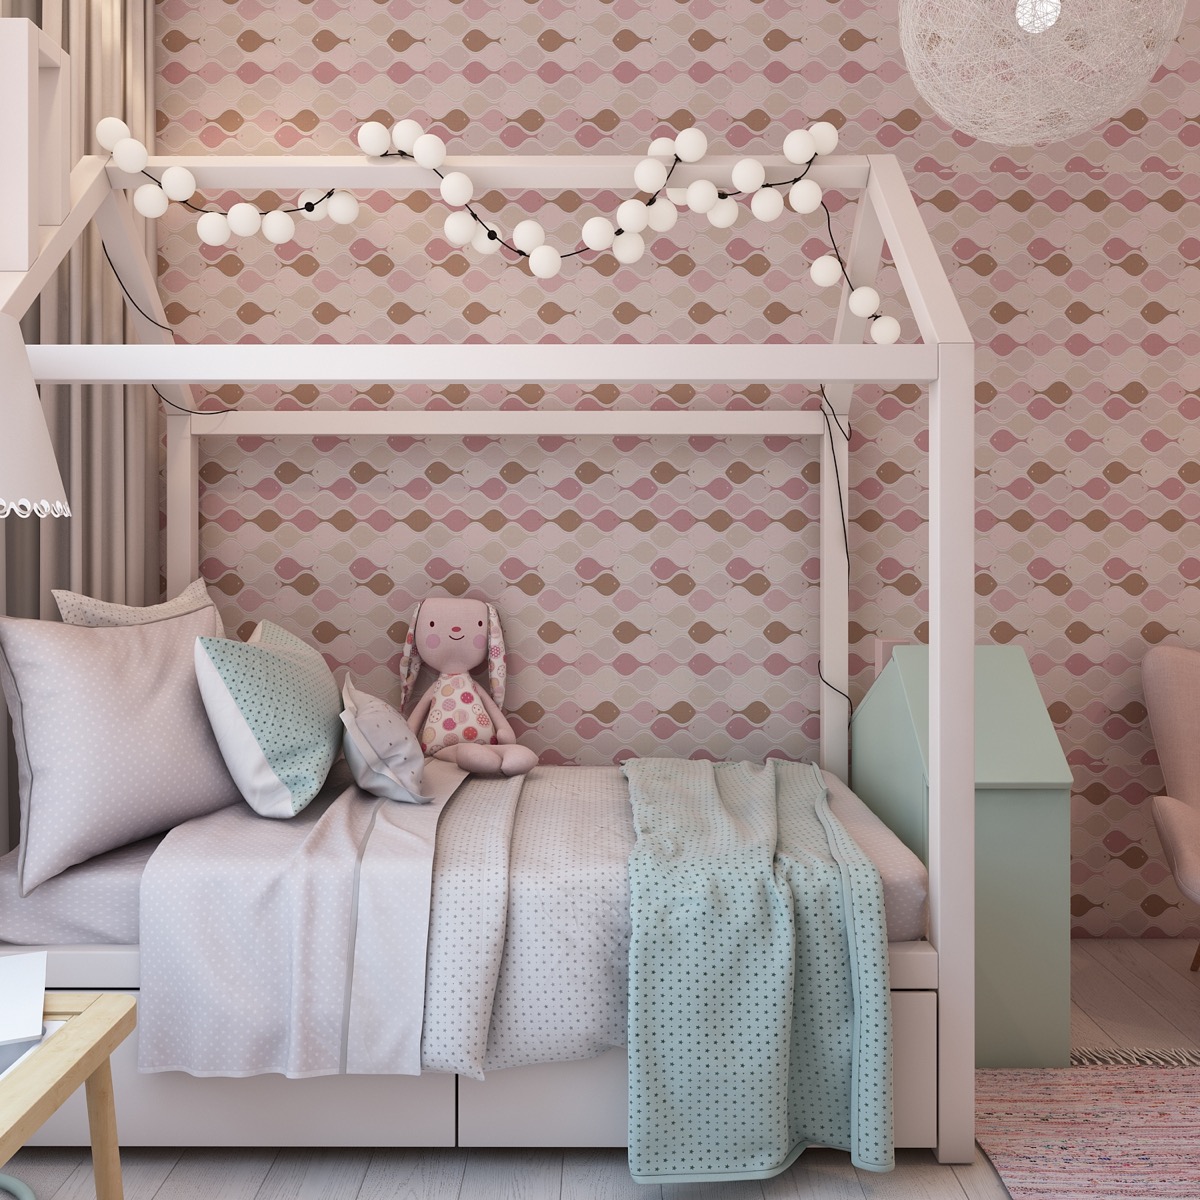 Hình ảnh cận cảnh giường tầng với sắc hồng ngọt ngào, nhấn nhá màu xanh bạc hà.